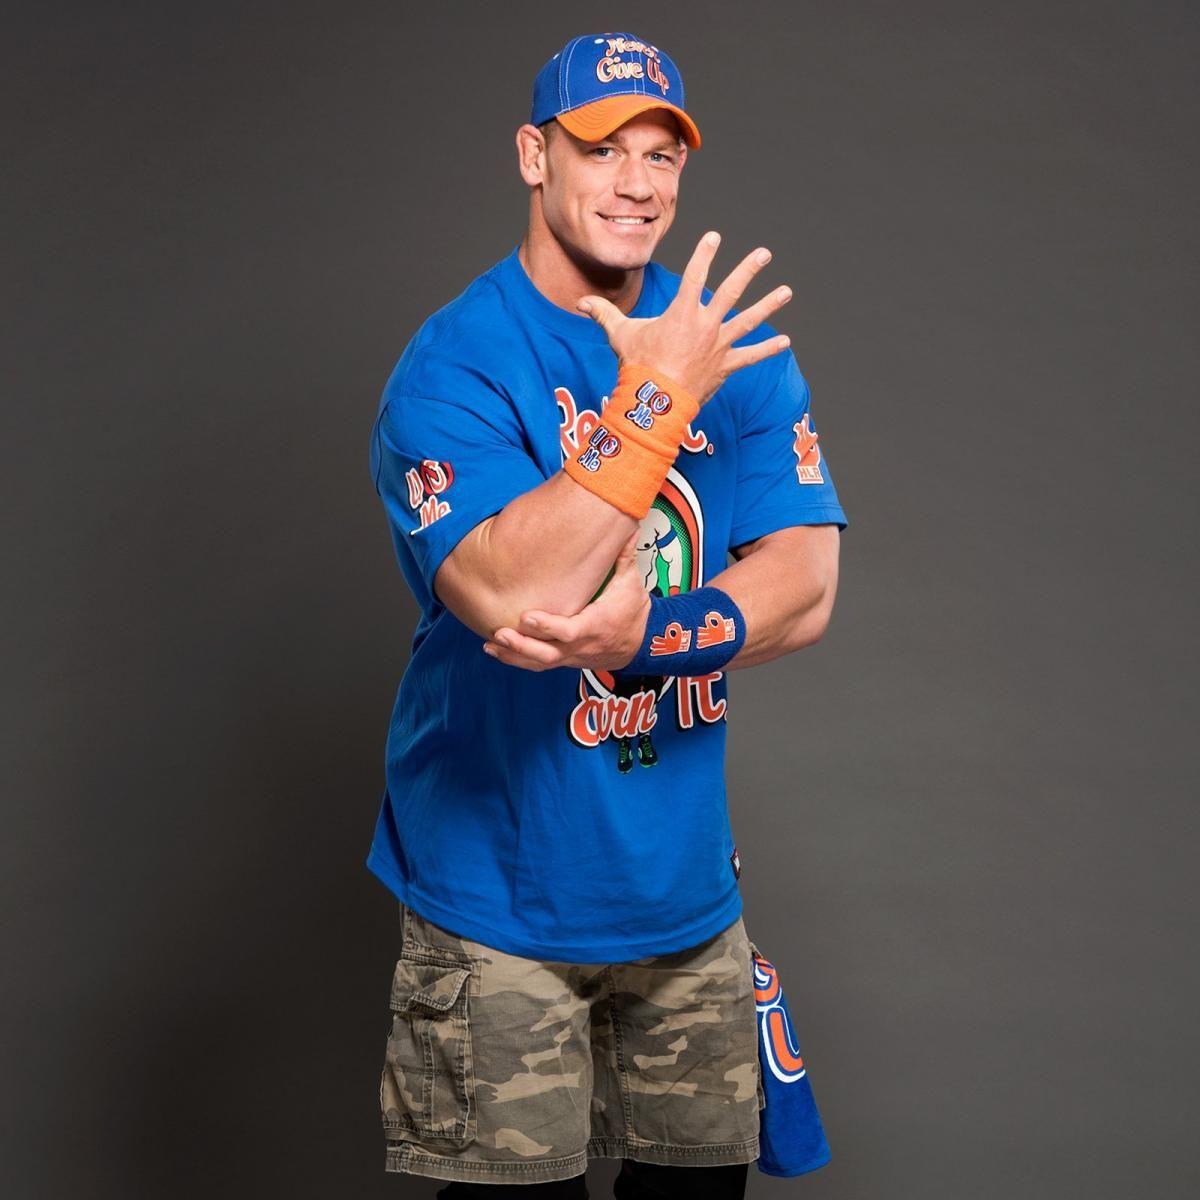 John Cena's new gear: photo